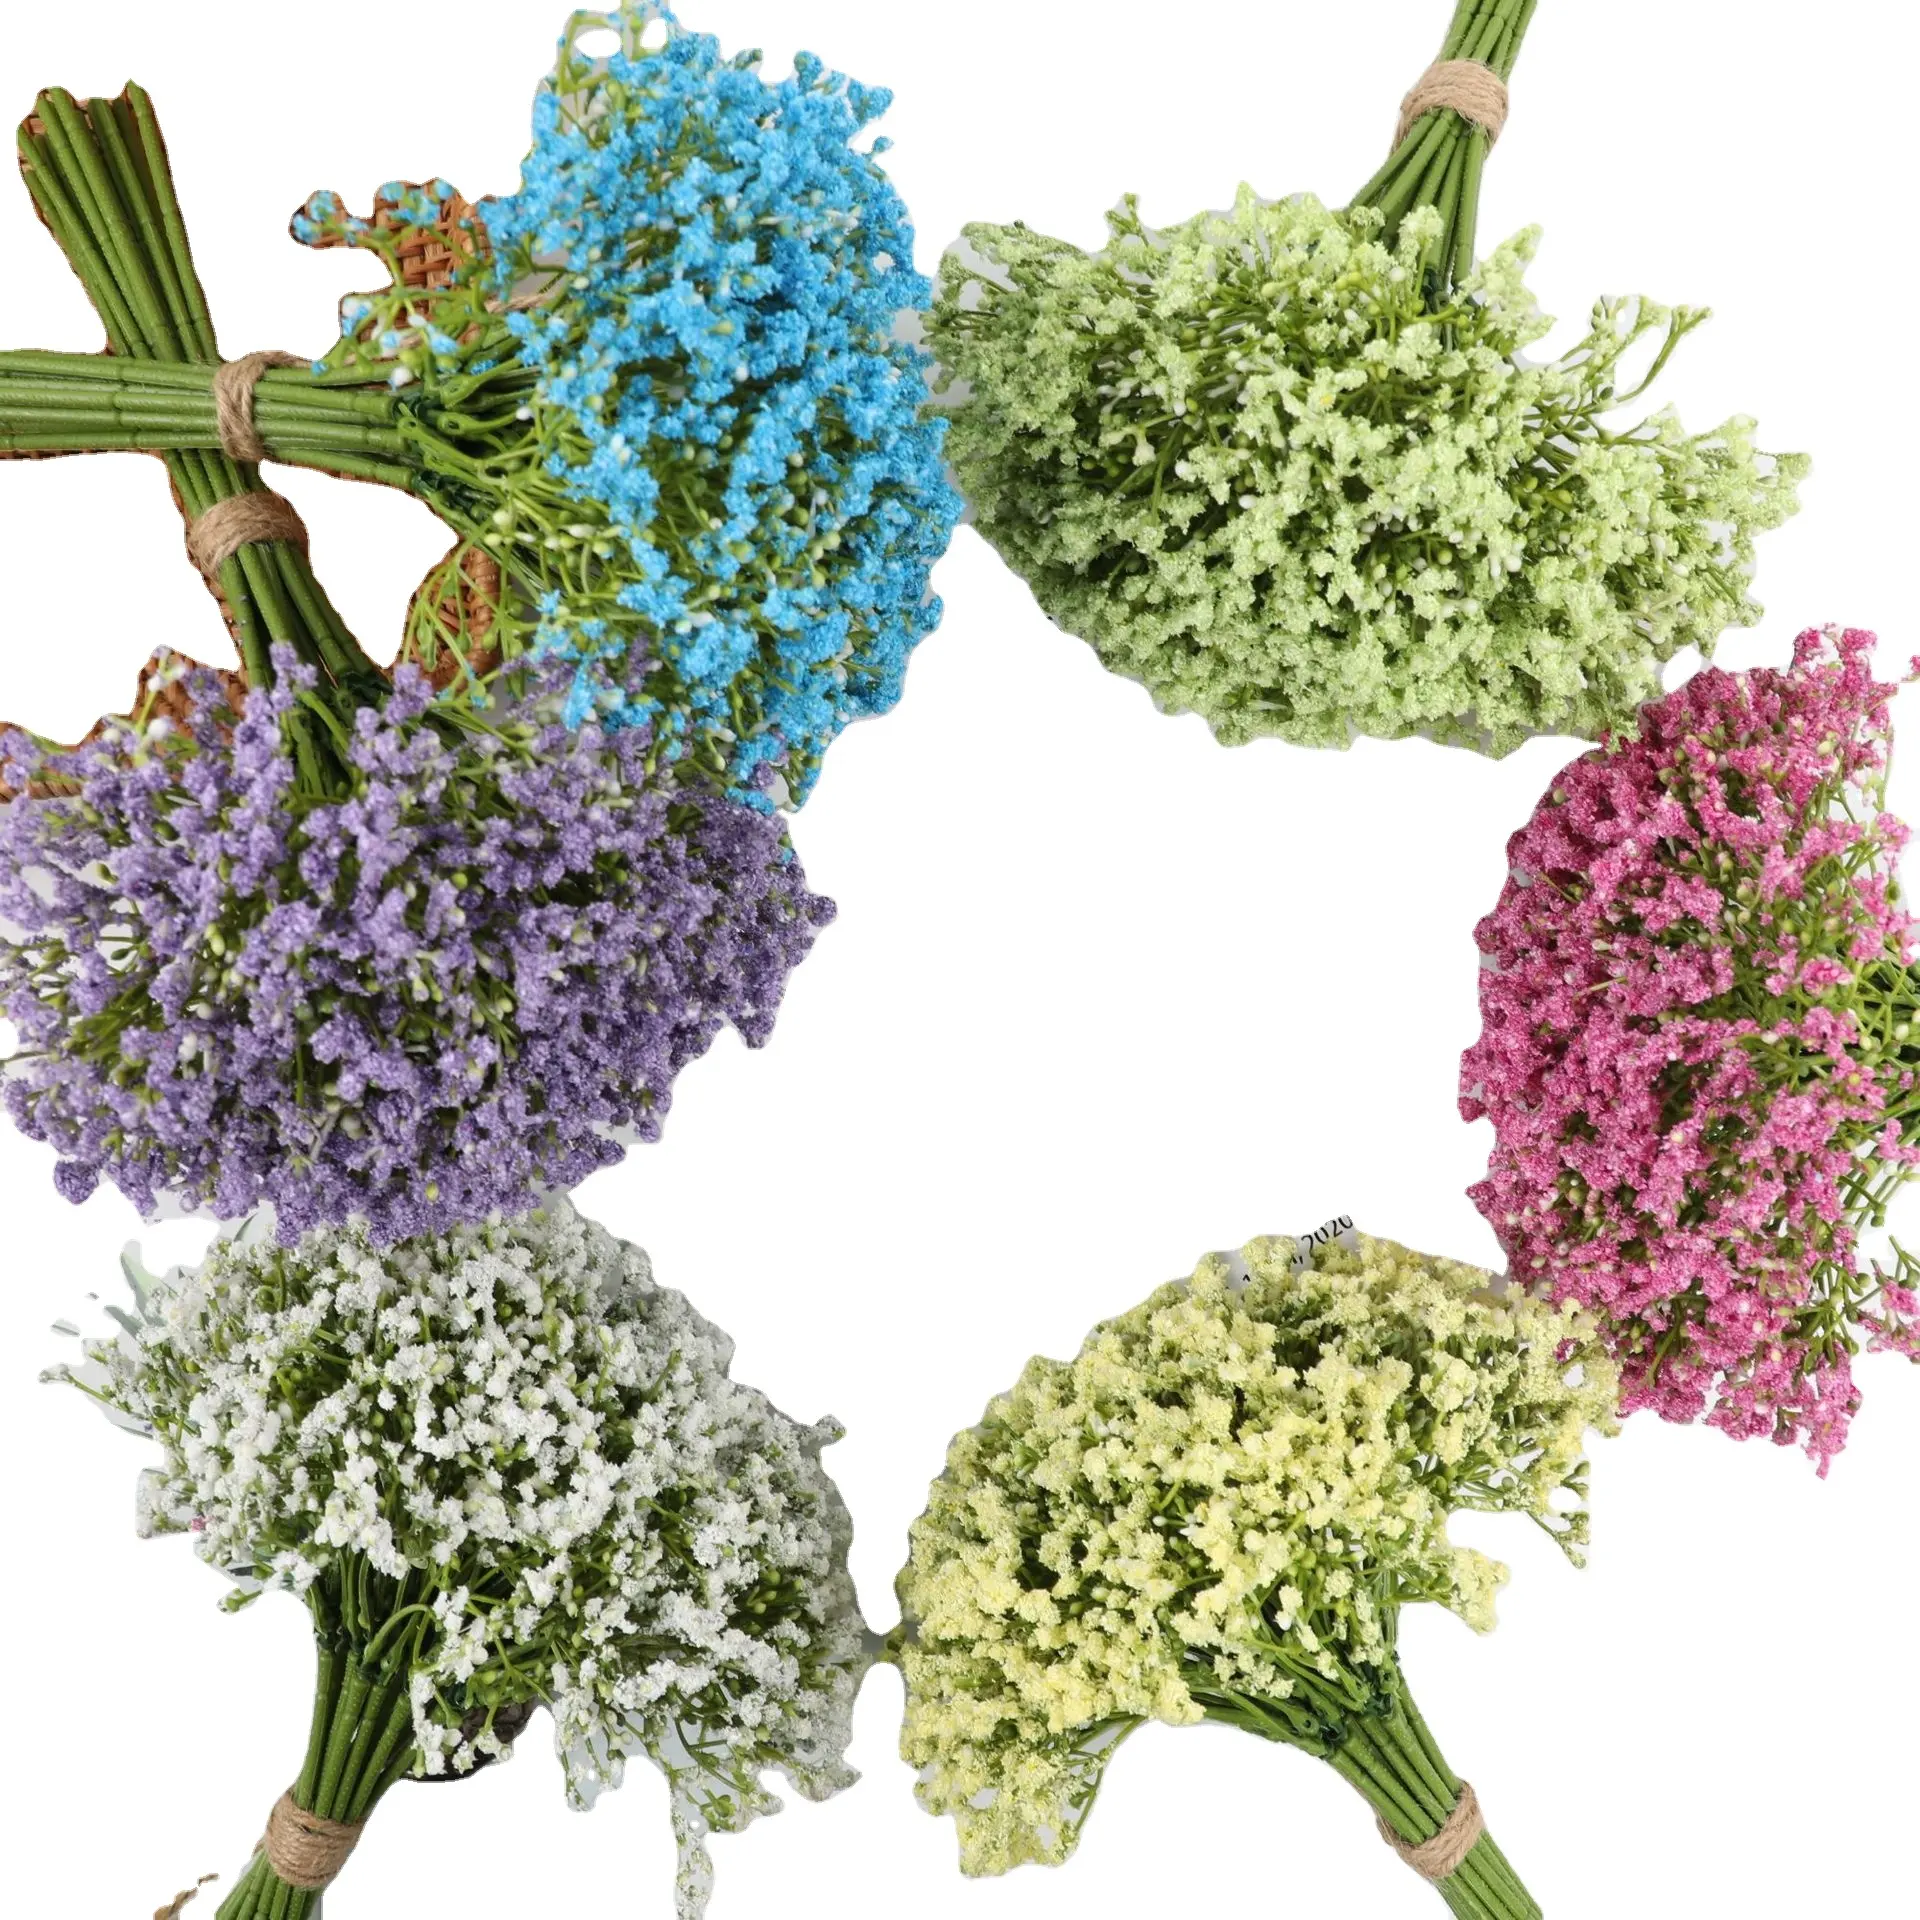 Full star simulazione fiore bouquet a mano fiori secchi decorazione di nozze piante e fiori artificiali